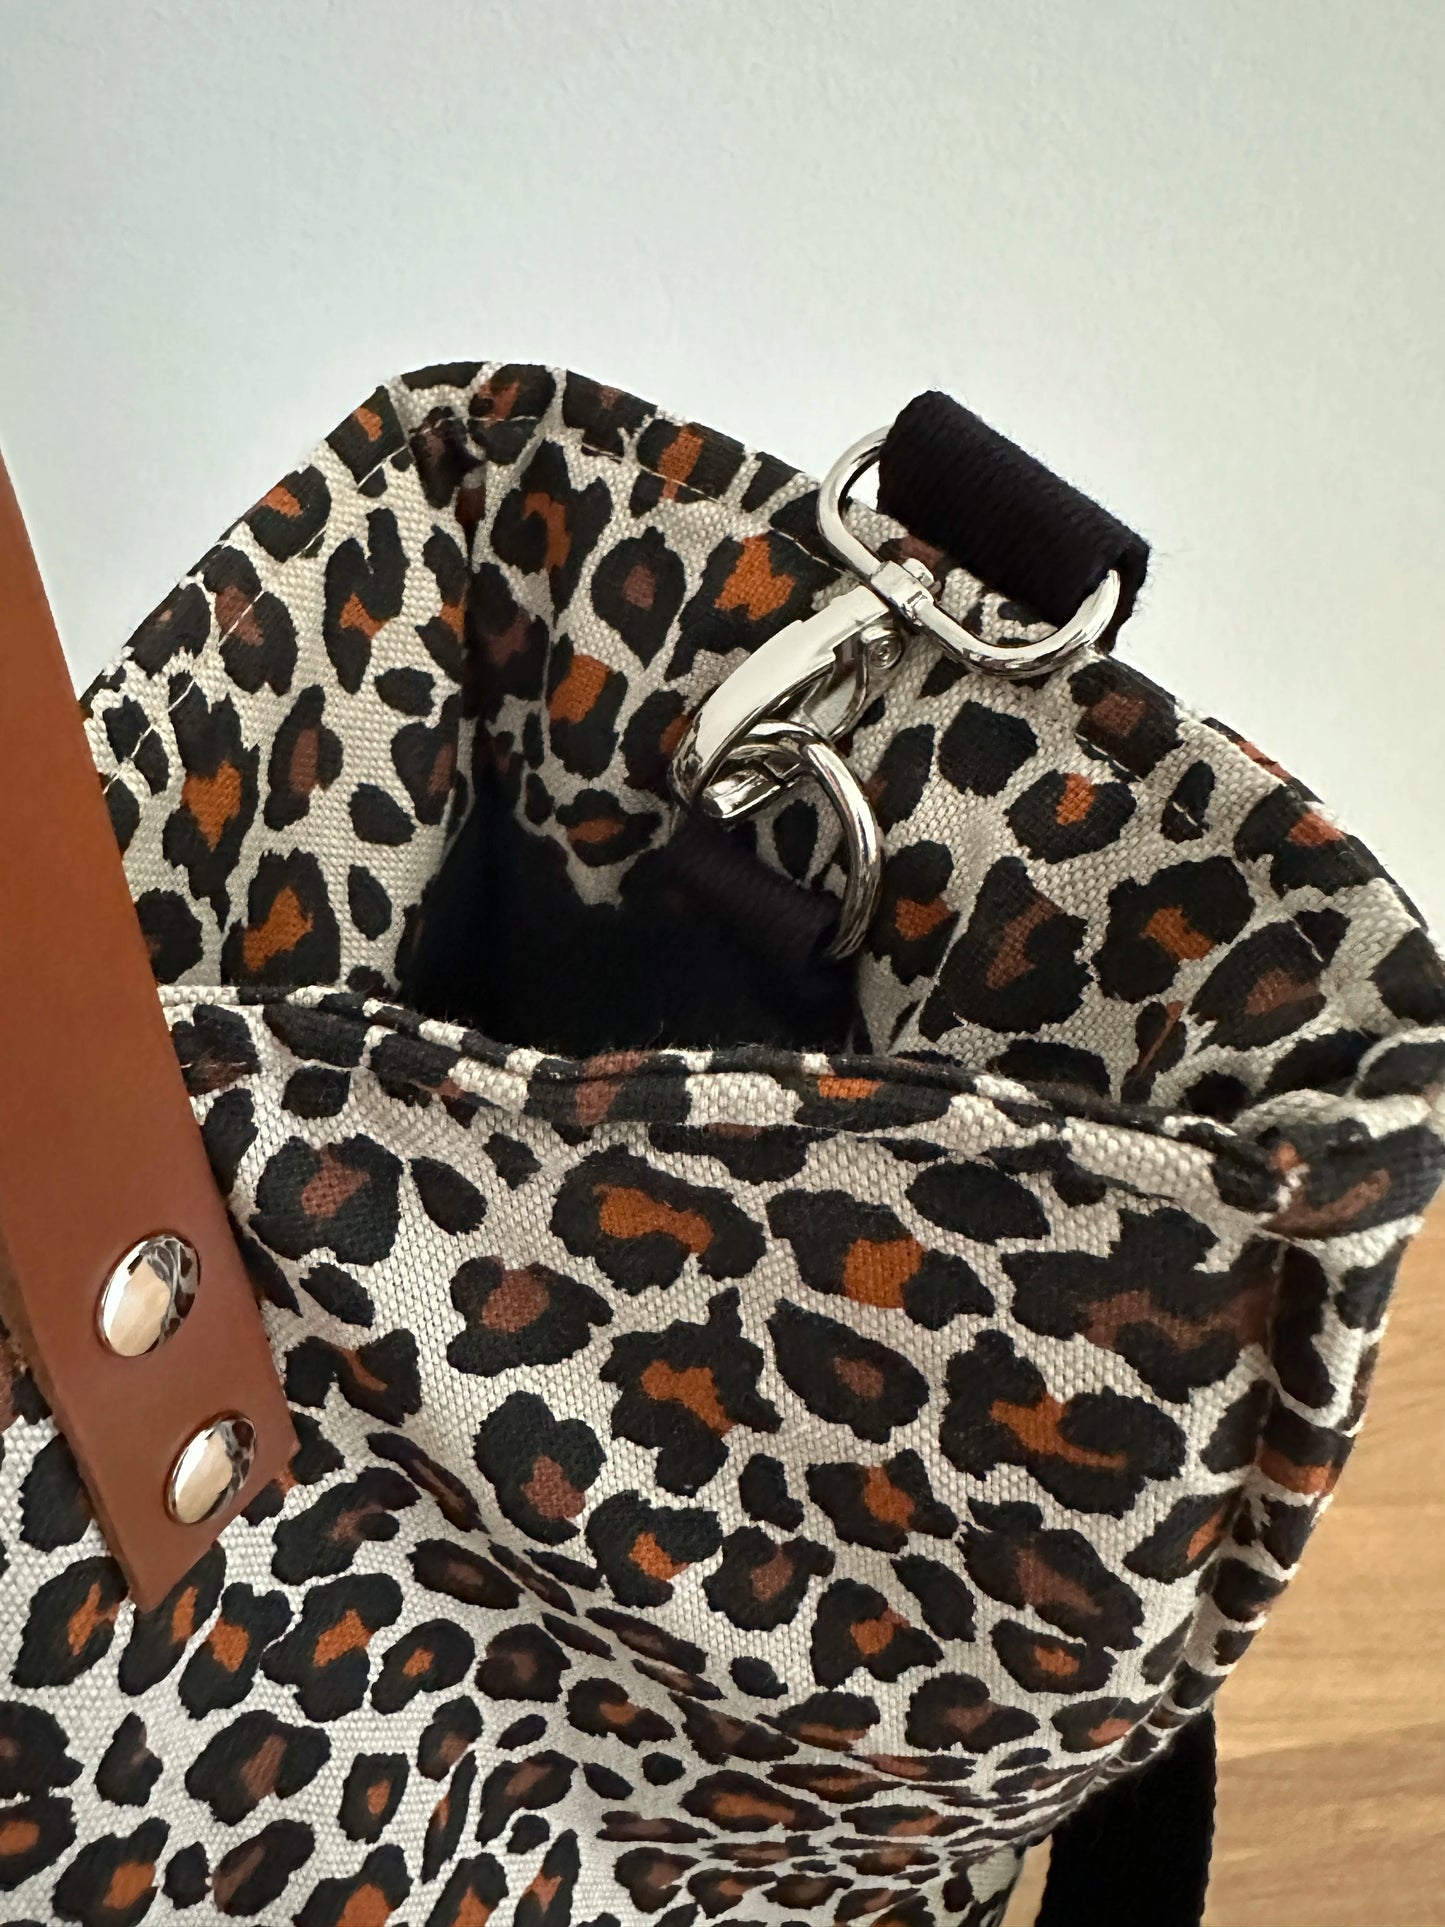 Le système de fixation intérieure pour l'anse bandoulière du sac shopper léopard.